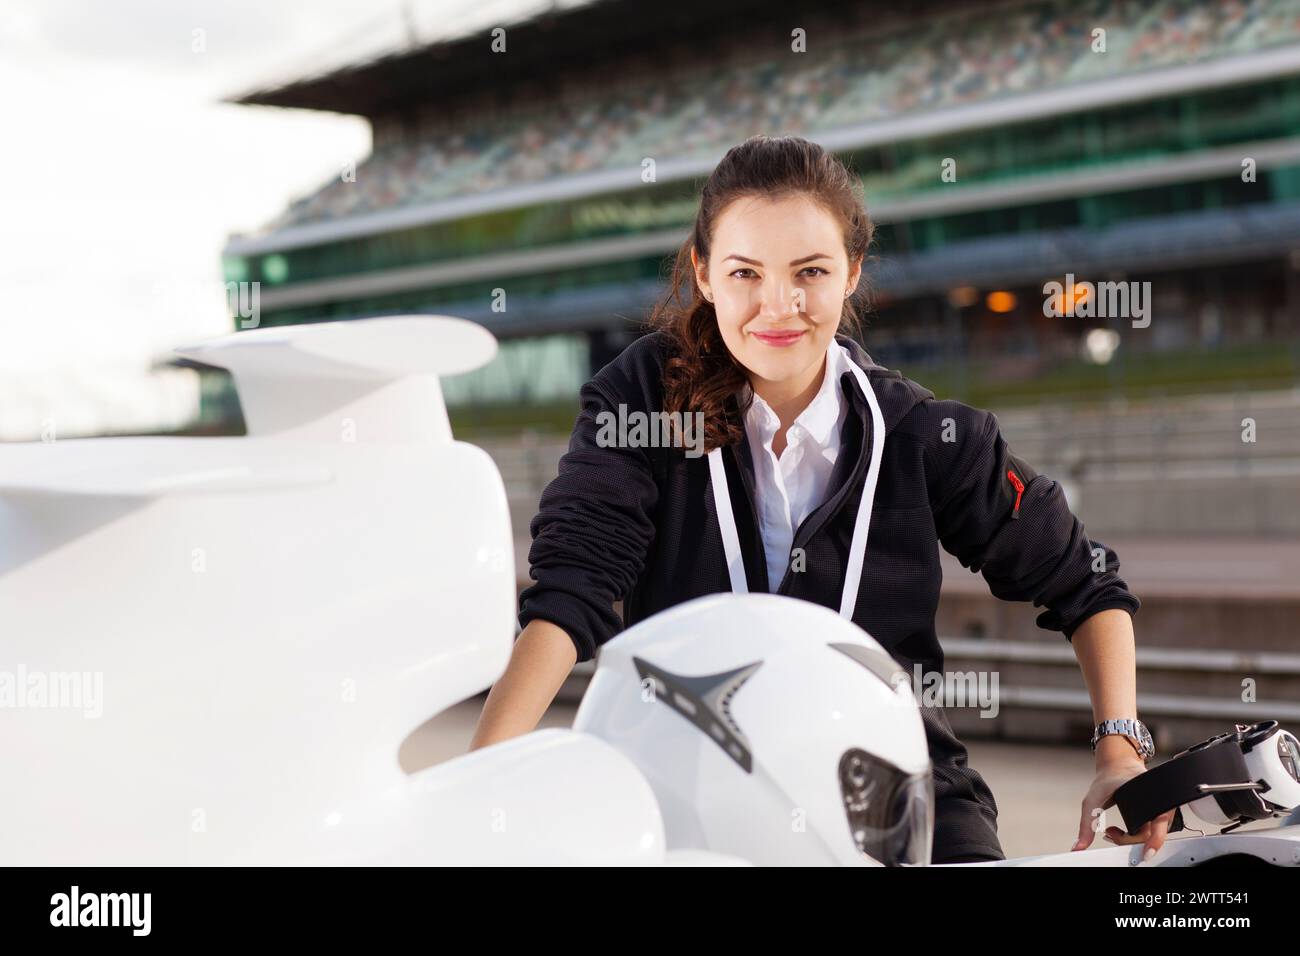 Selbstbewusste Frau mit einem hellen Lächeln, die sich auf ein Rennmotorrad auf einer Rennstrecke stützt. Stockfoto